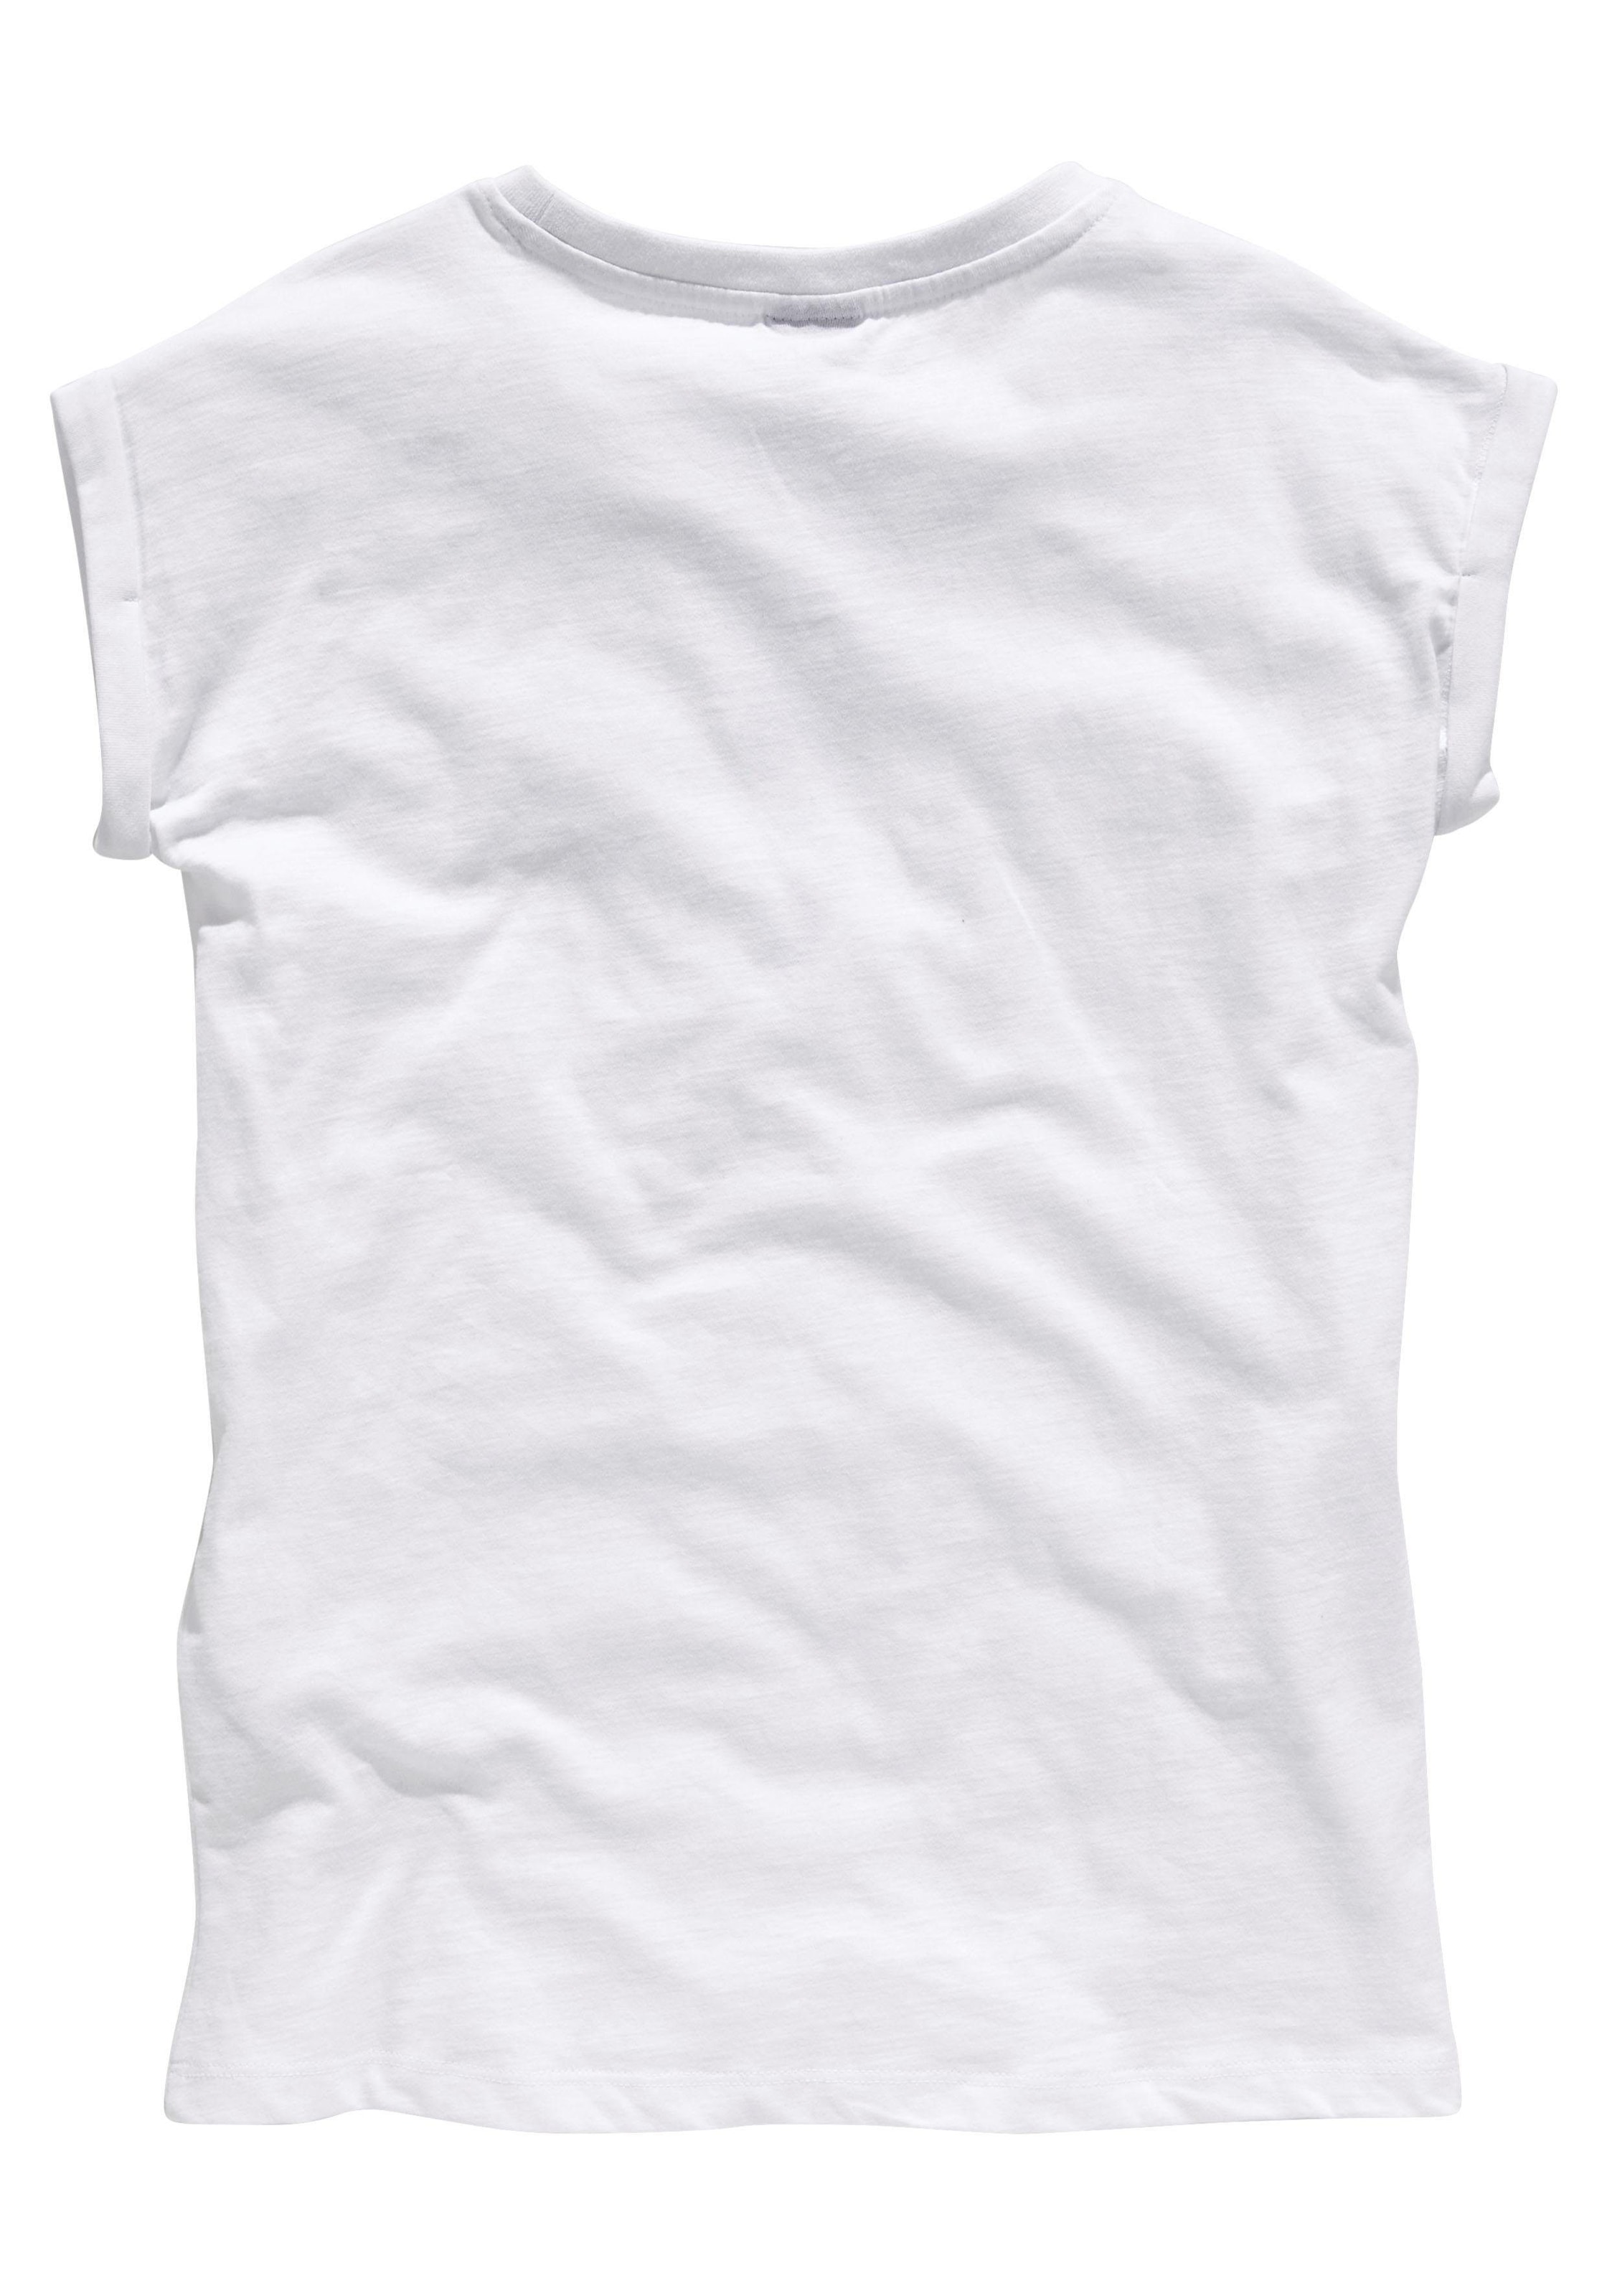 Trendige KIDSWORLD T-Shirt »Bevor Du fragst: NEIN!«, in weiter legerer Form  ohne Mindestbestellwert kaufen